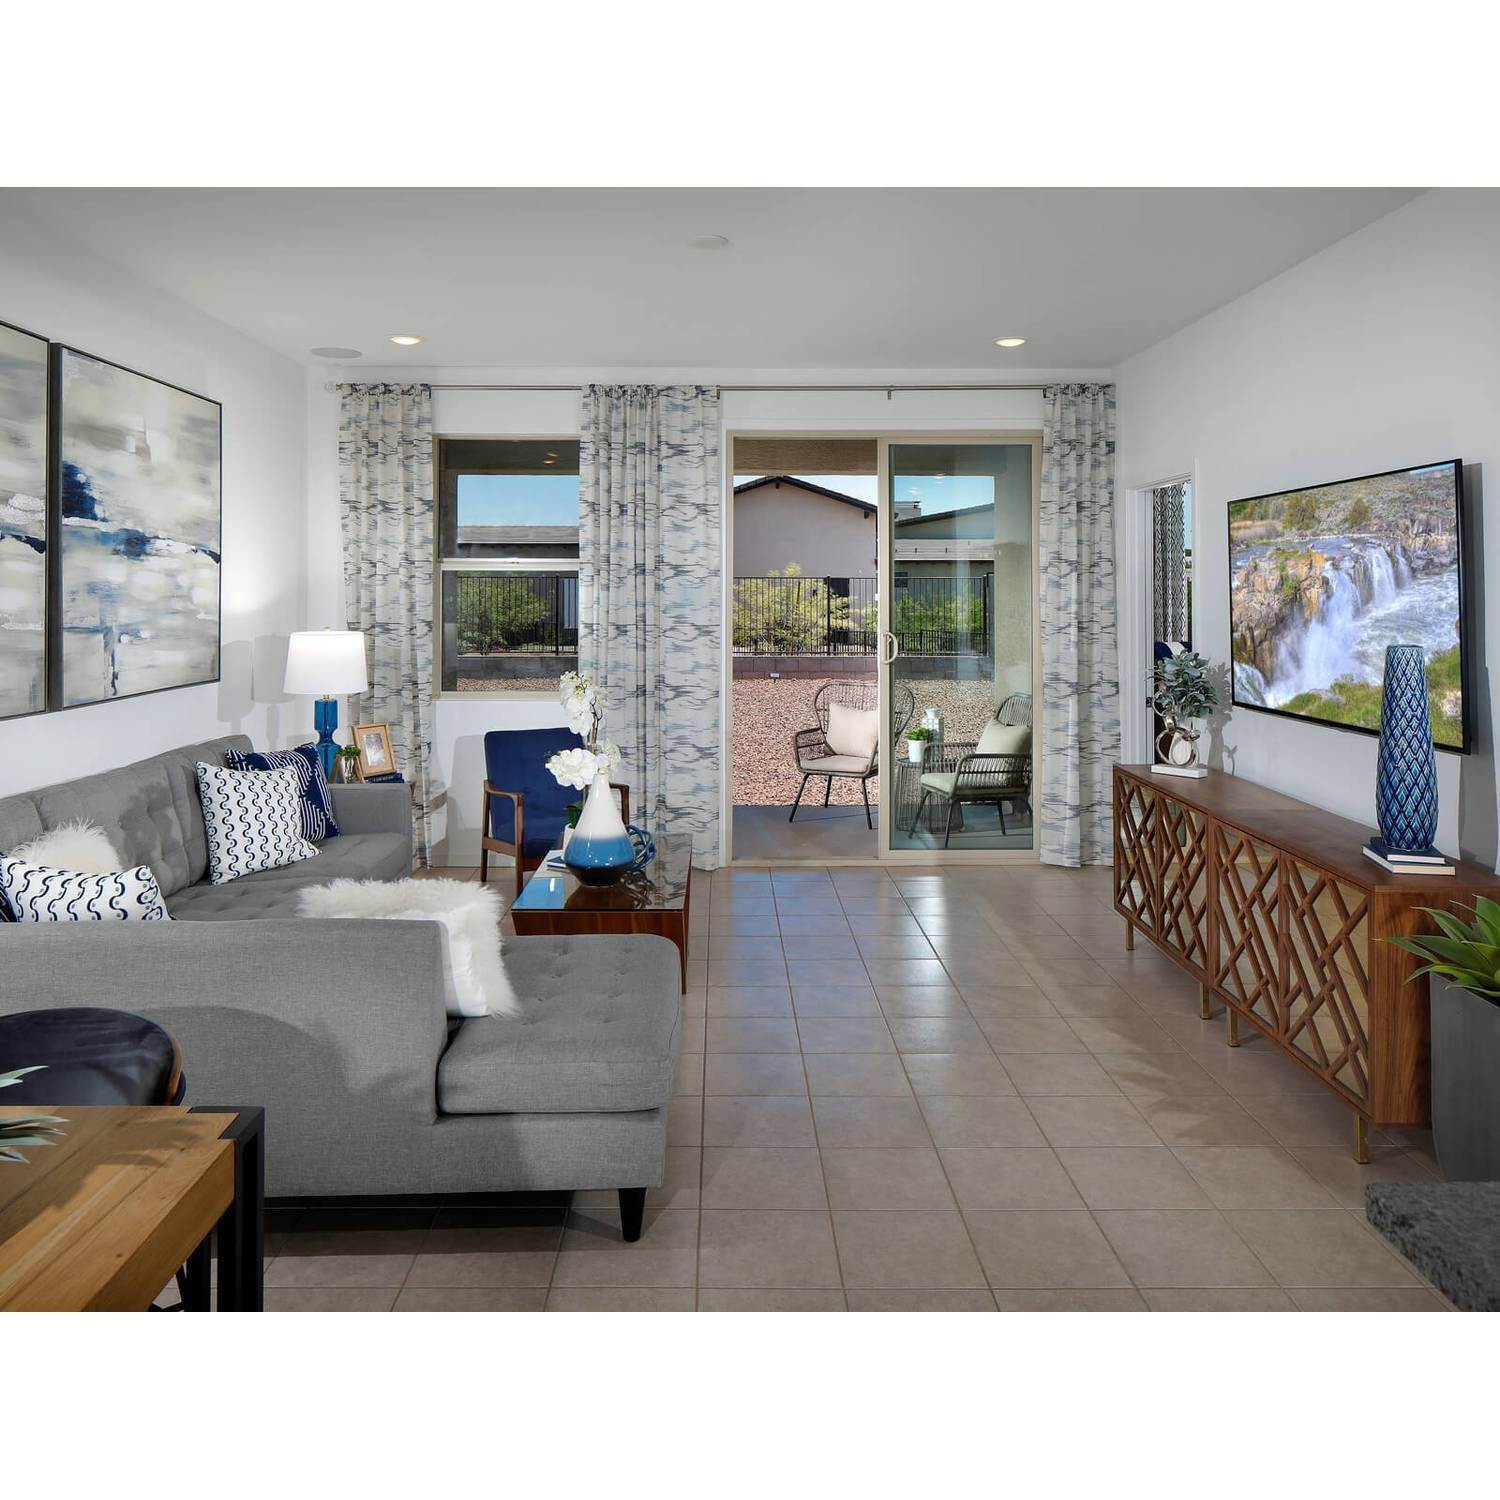 7. Villas at The Lakes at Rancho El Dorado building at 21780 N Lynn Street, Maricopa, AZ 85138